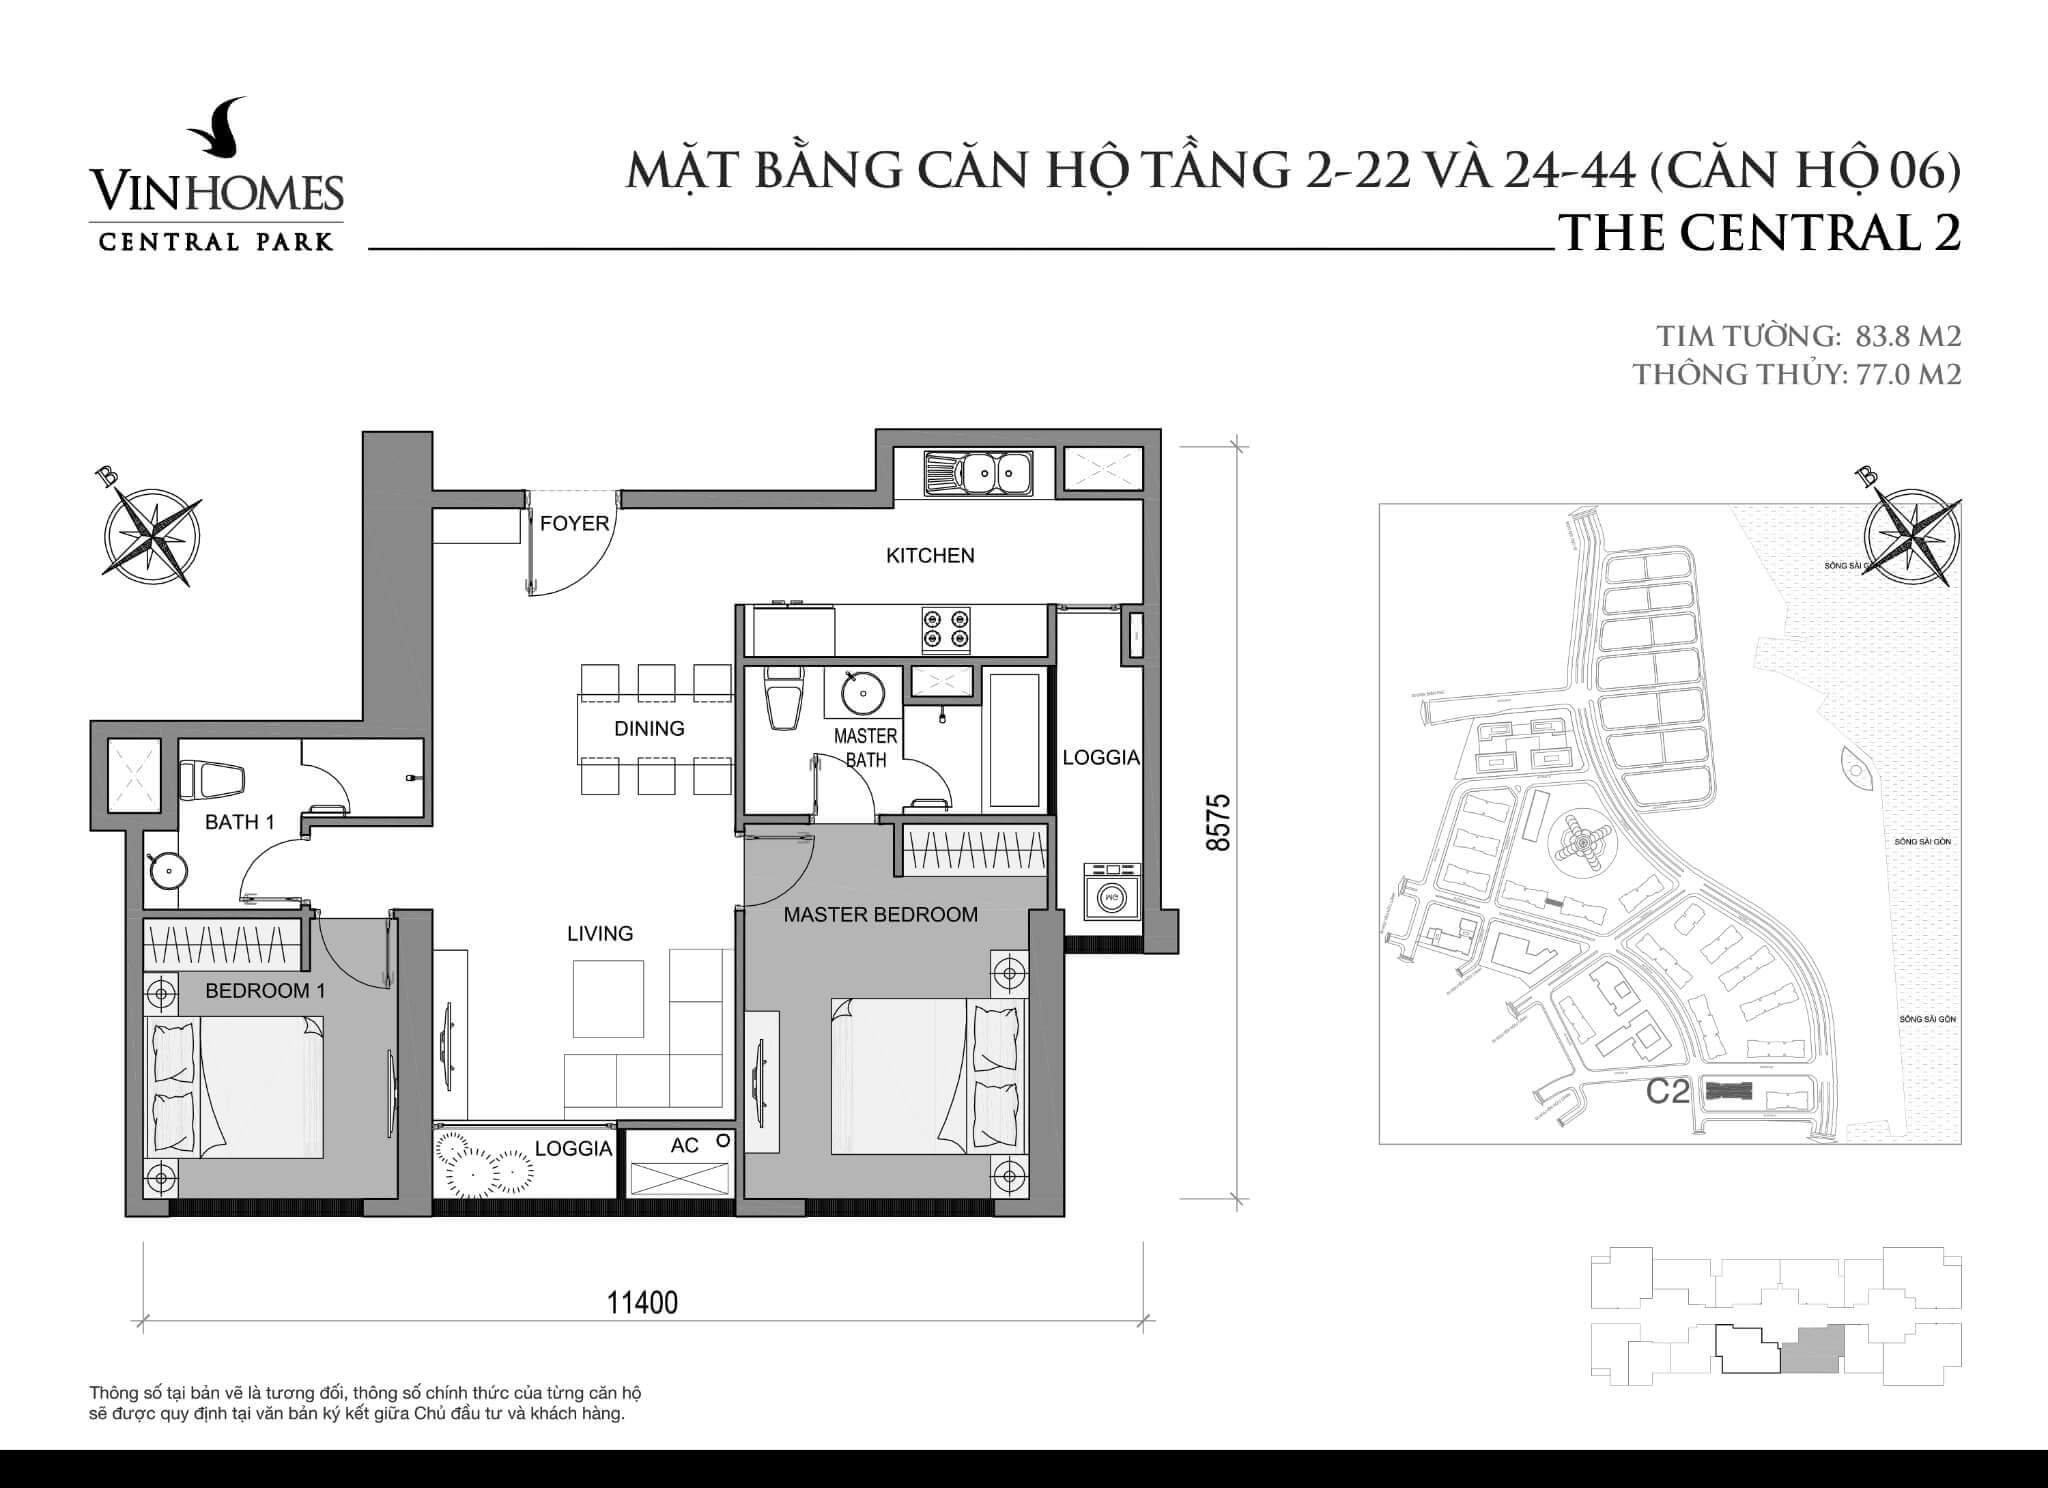 layout căn hộ số 6 tầng 2-44 Central 2